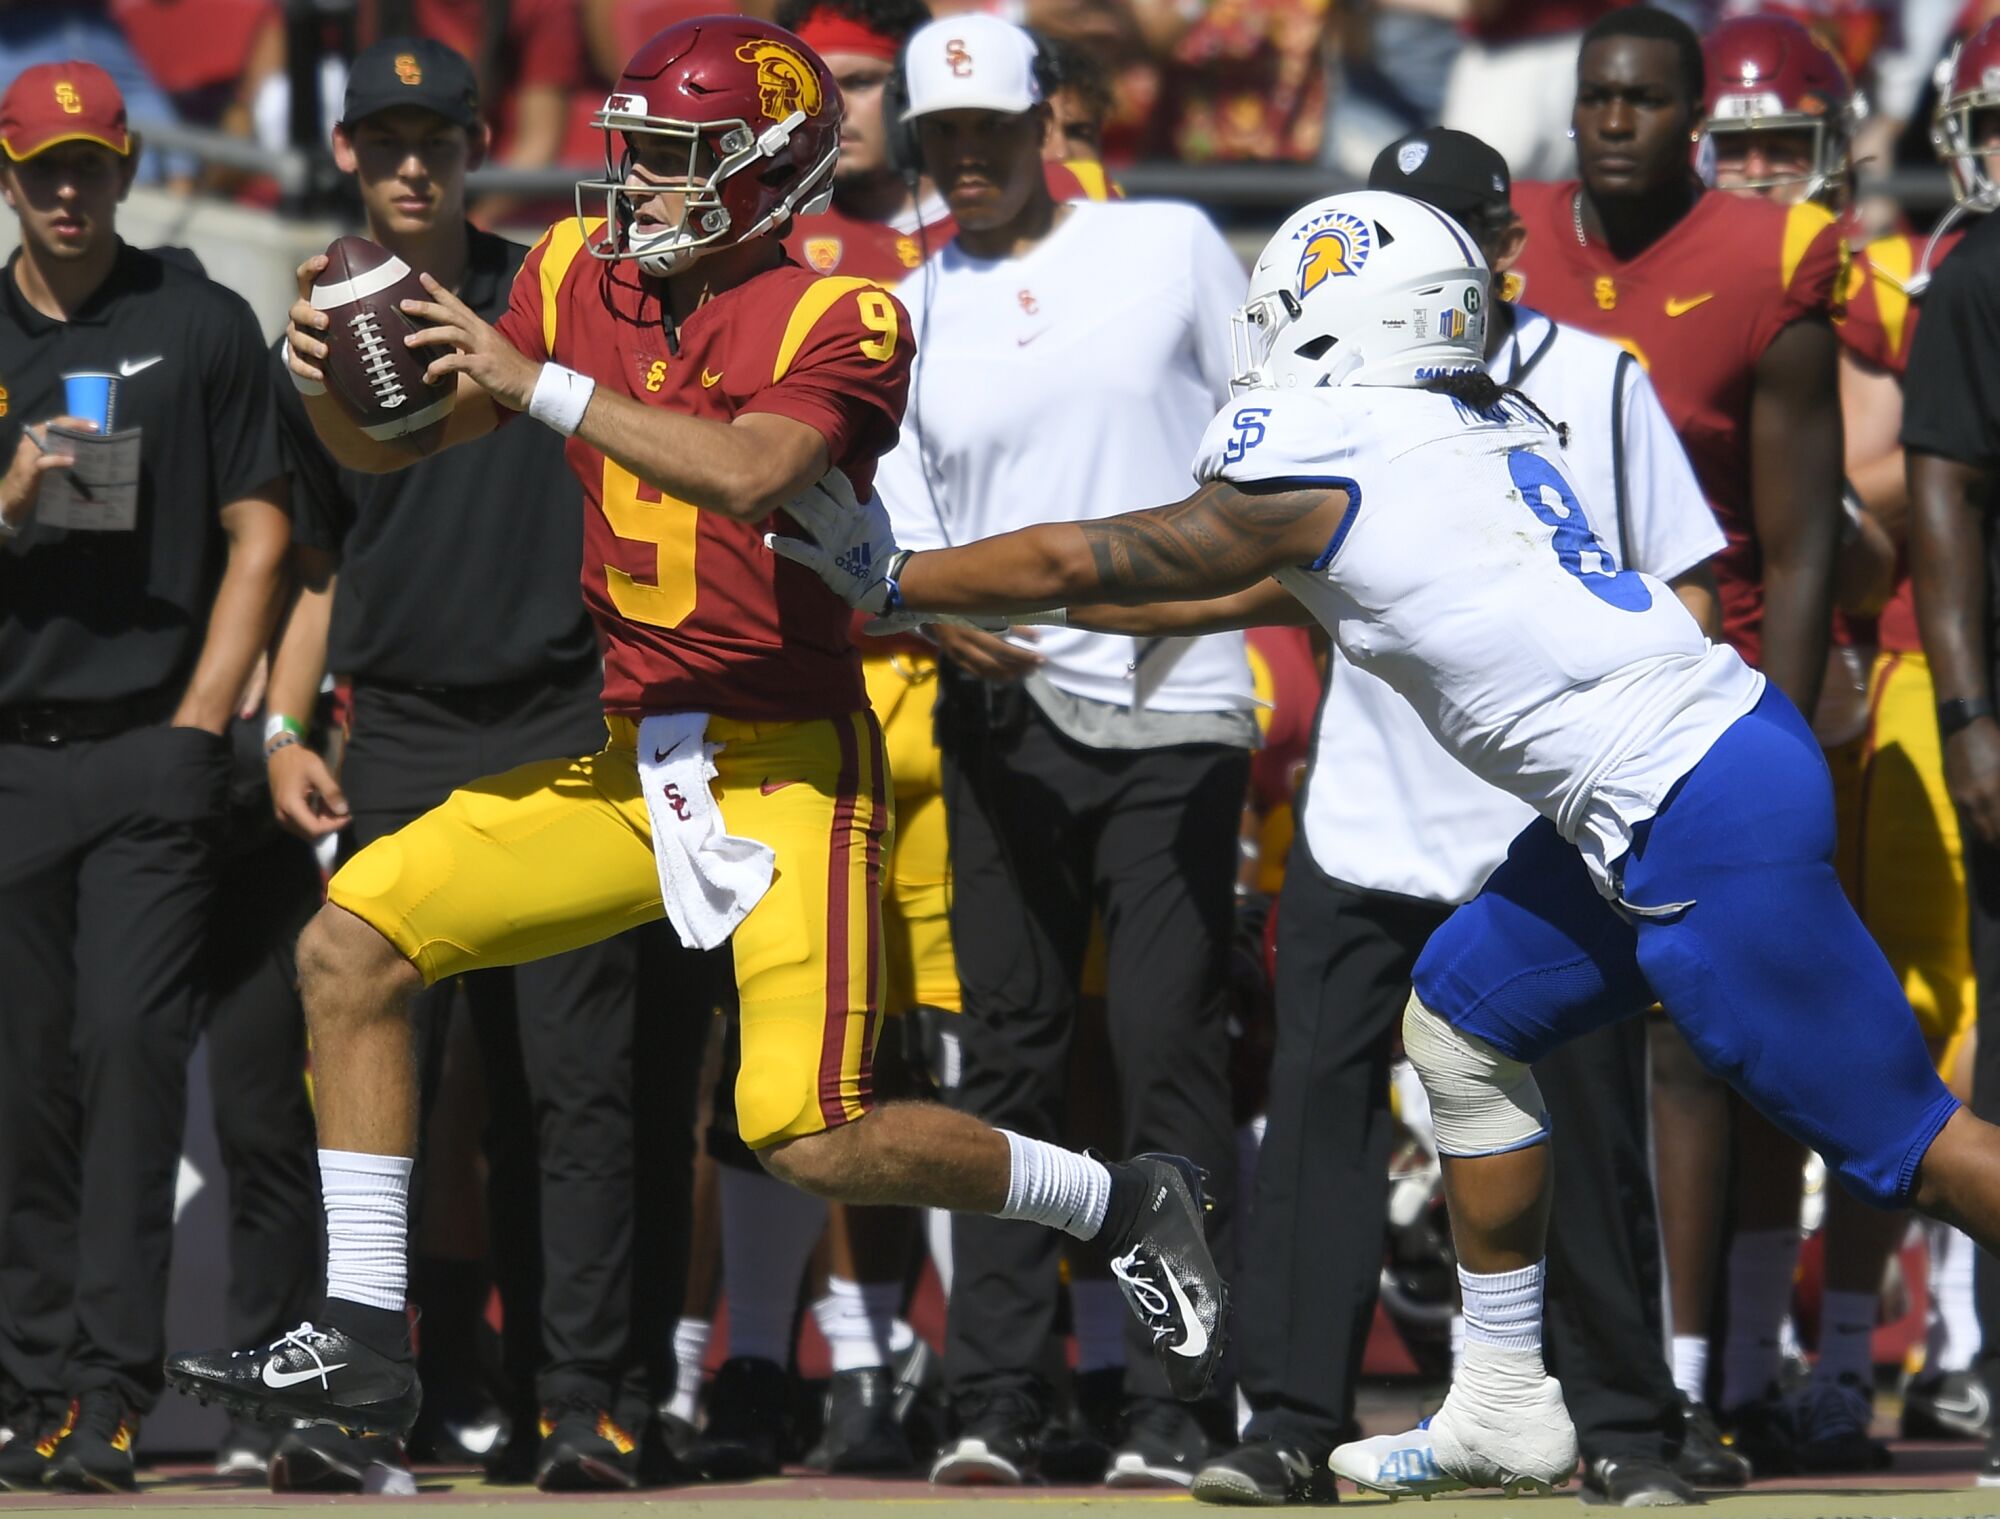 San Jose State Spartans linebacker Alii Matau pushes USC Trojans quarterback Kedon Slovis.